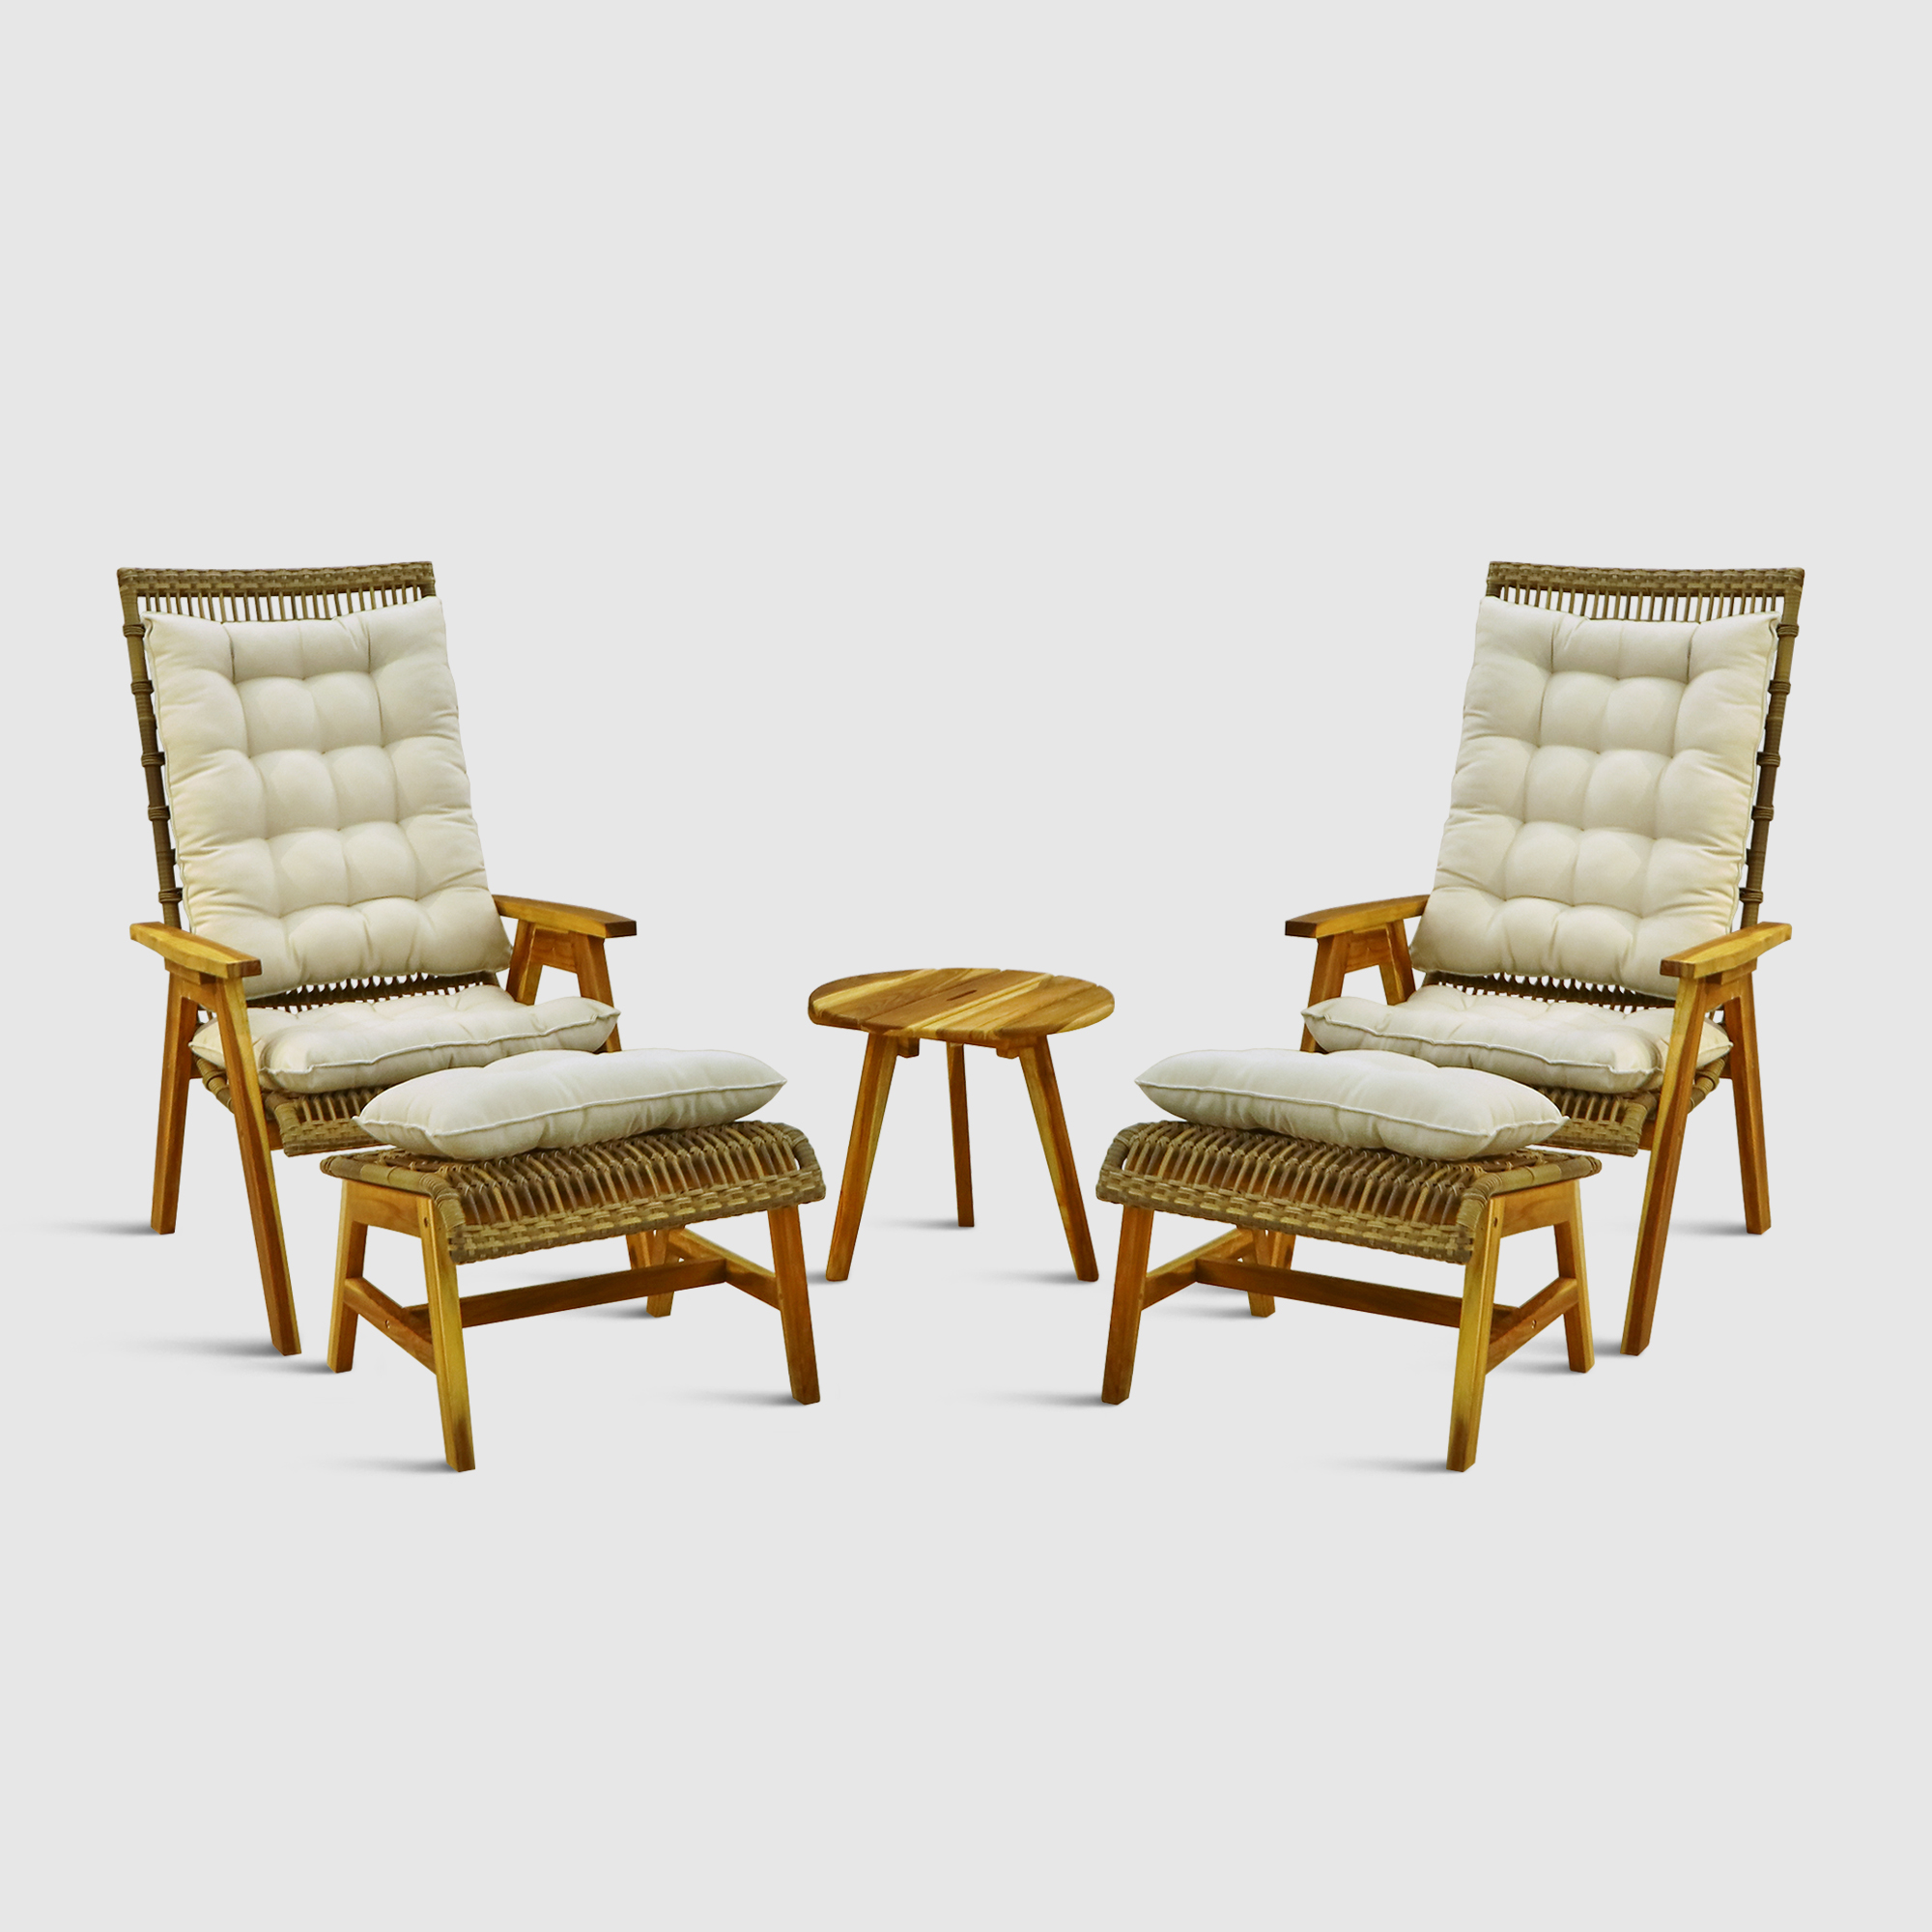 Комплект мебели Jepara Wicker relax 5 предметов, цвет светло-коричневый, размер 73х66х118